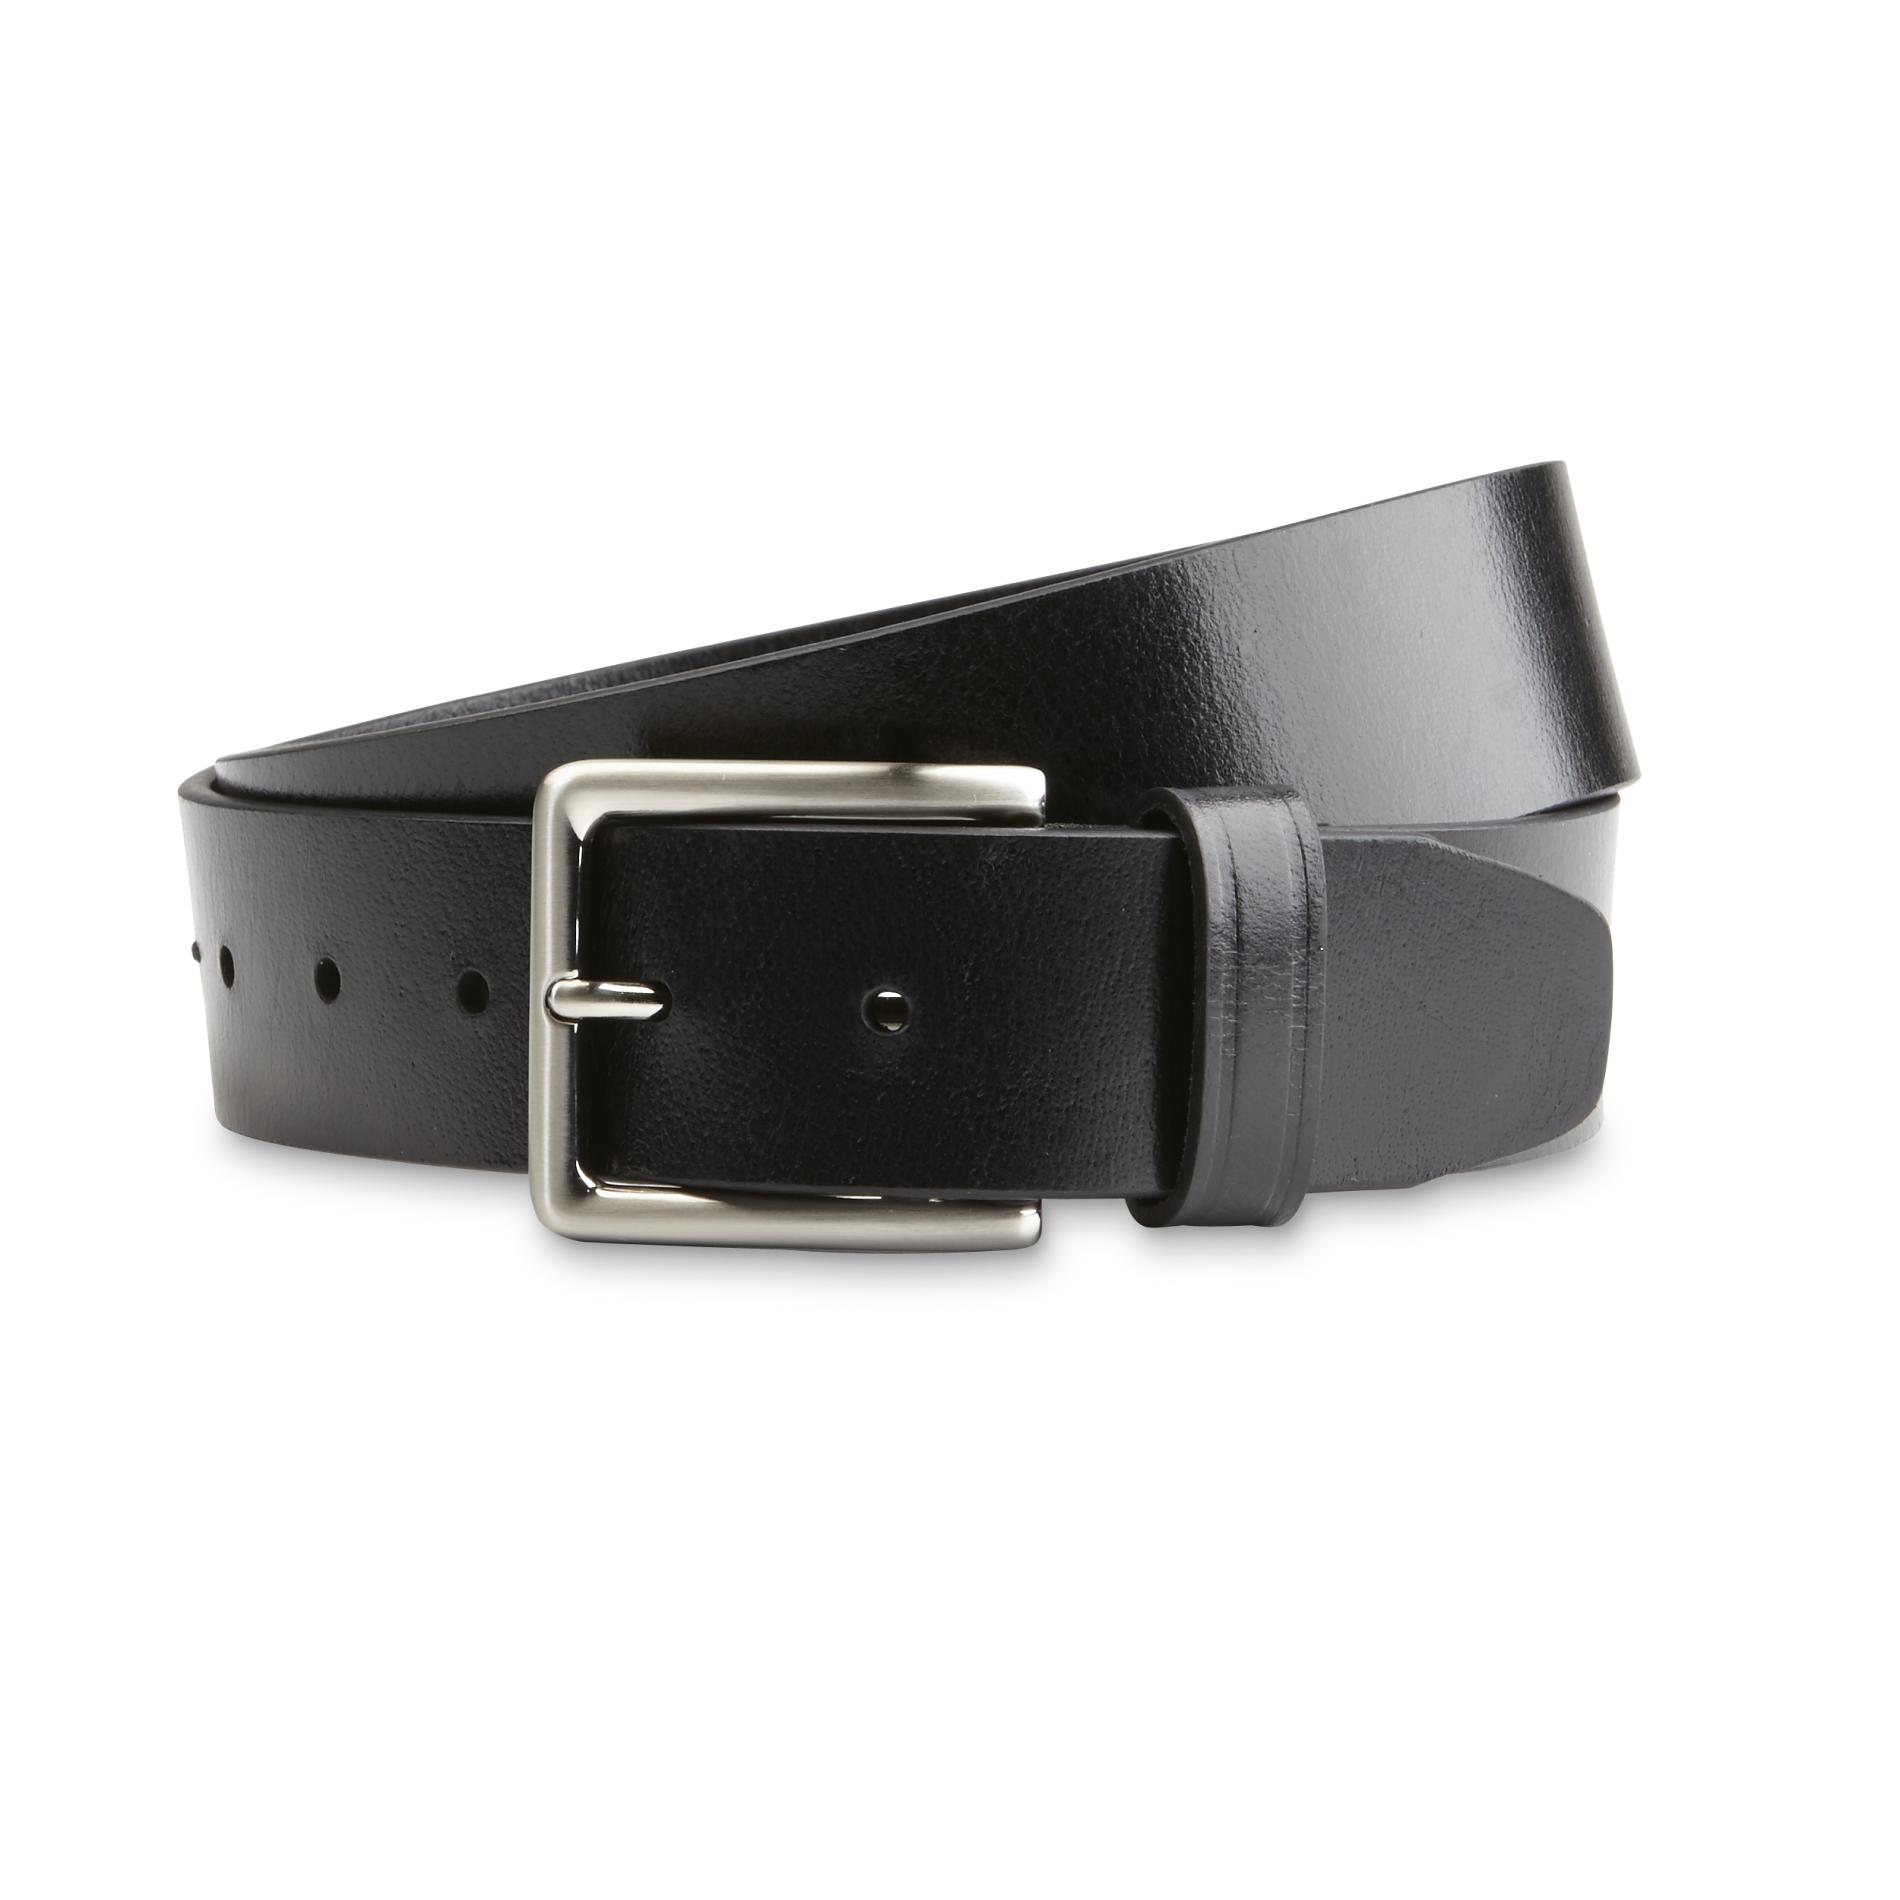 Dockers Men's Leather Belt